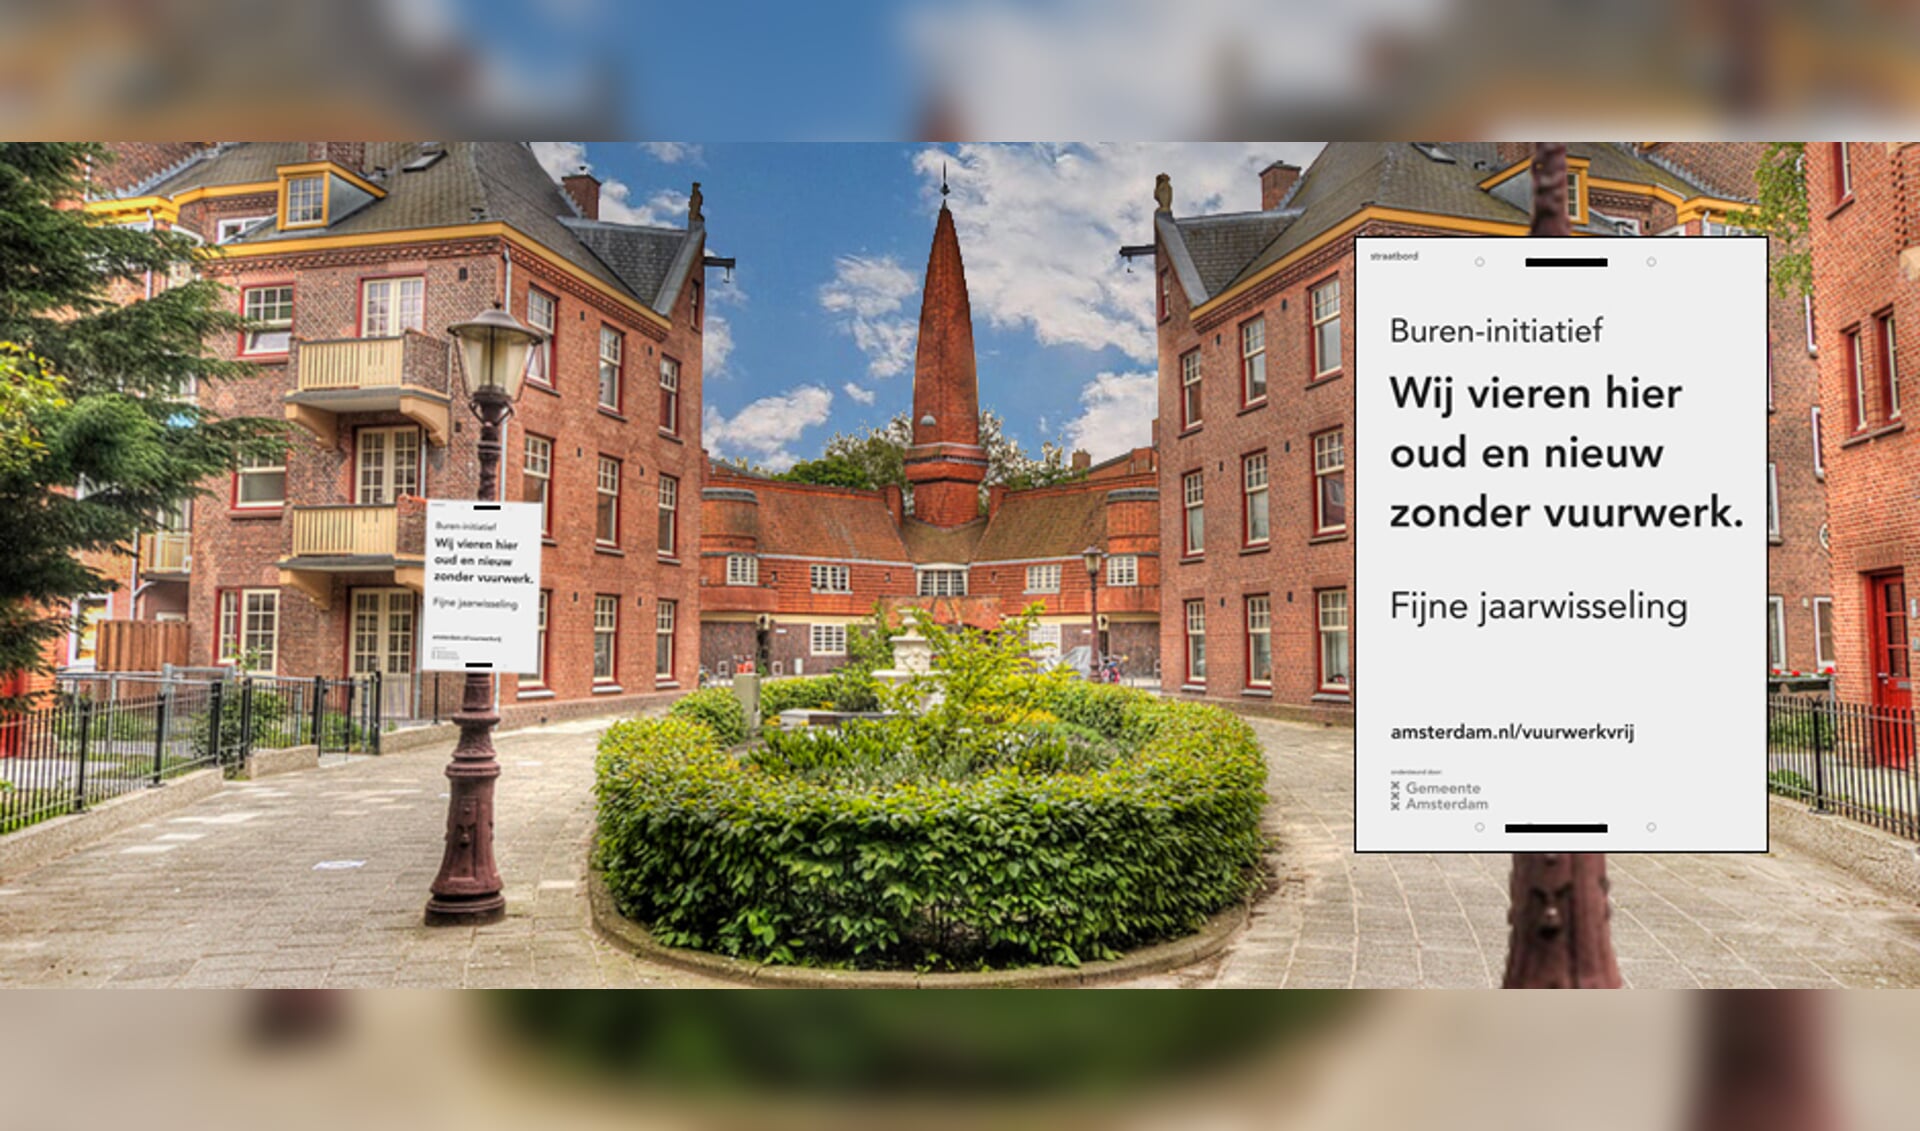 Bij de gemeente is een pakket te krijgen om aan te geven dat een straat of buurt met oud en nieuw vuurwerkvrij is. (Foto: gemeente Amsterdam)